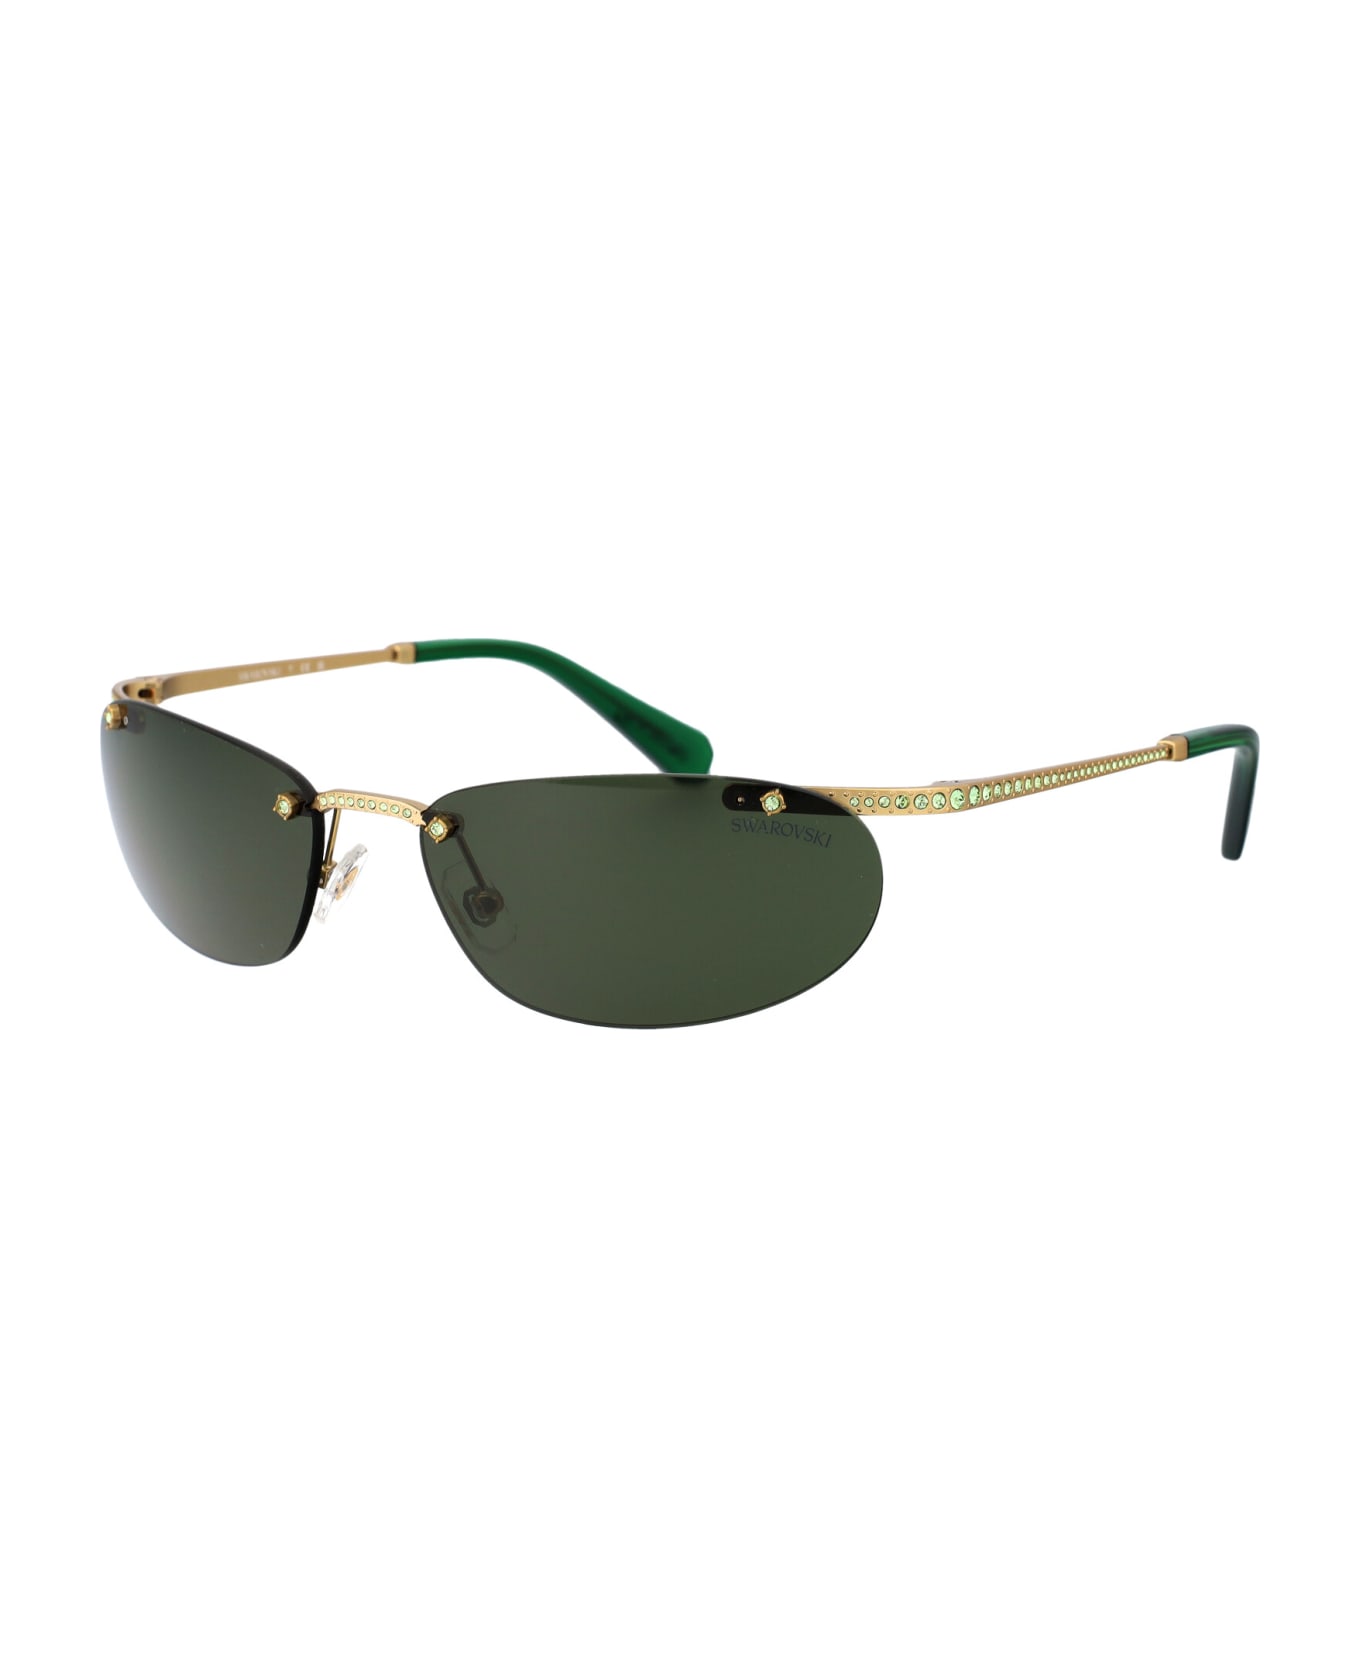 Swarovski 0sk7019 Sunglasses - 402471 Matte Gold